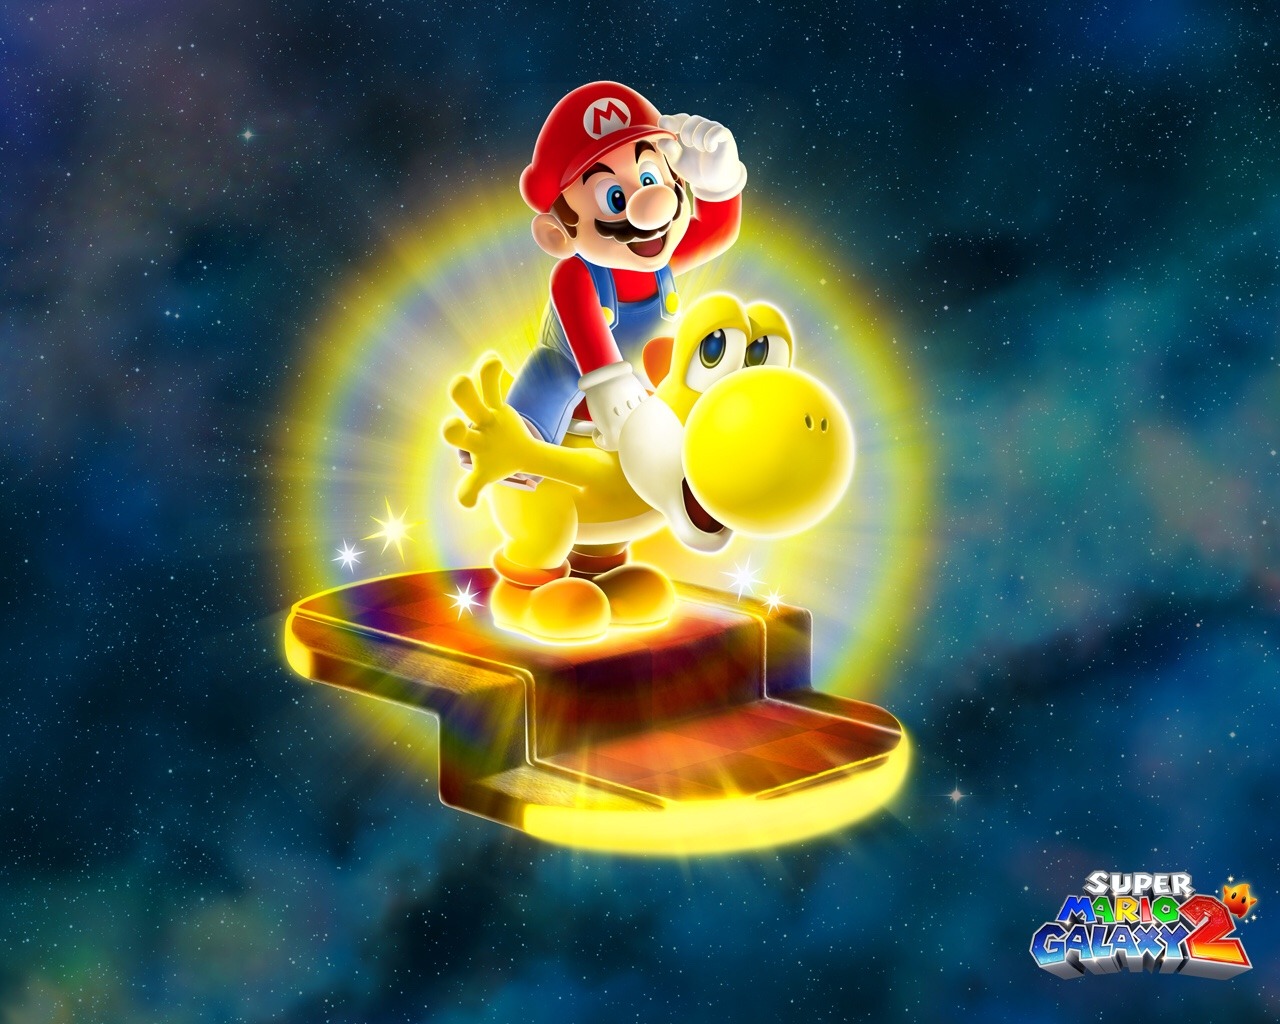 nintendo-plaza:  Super Mario Galaxy 2 HD Wallpapers